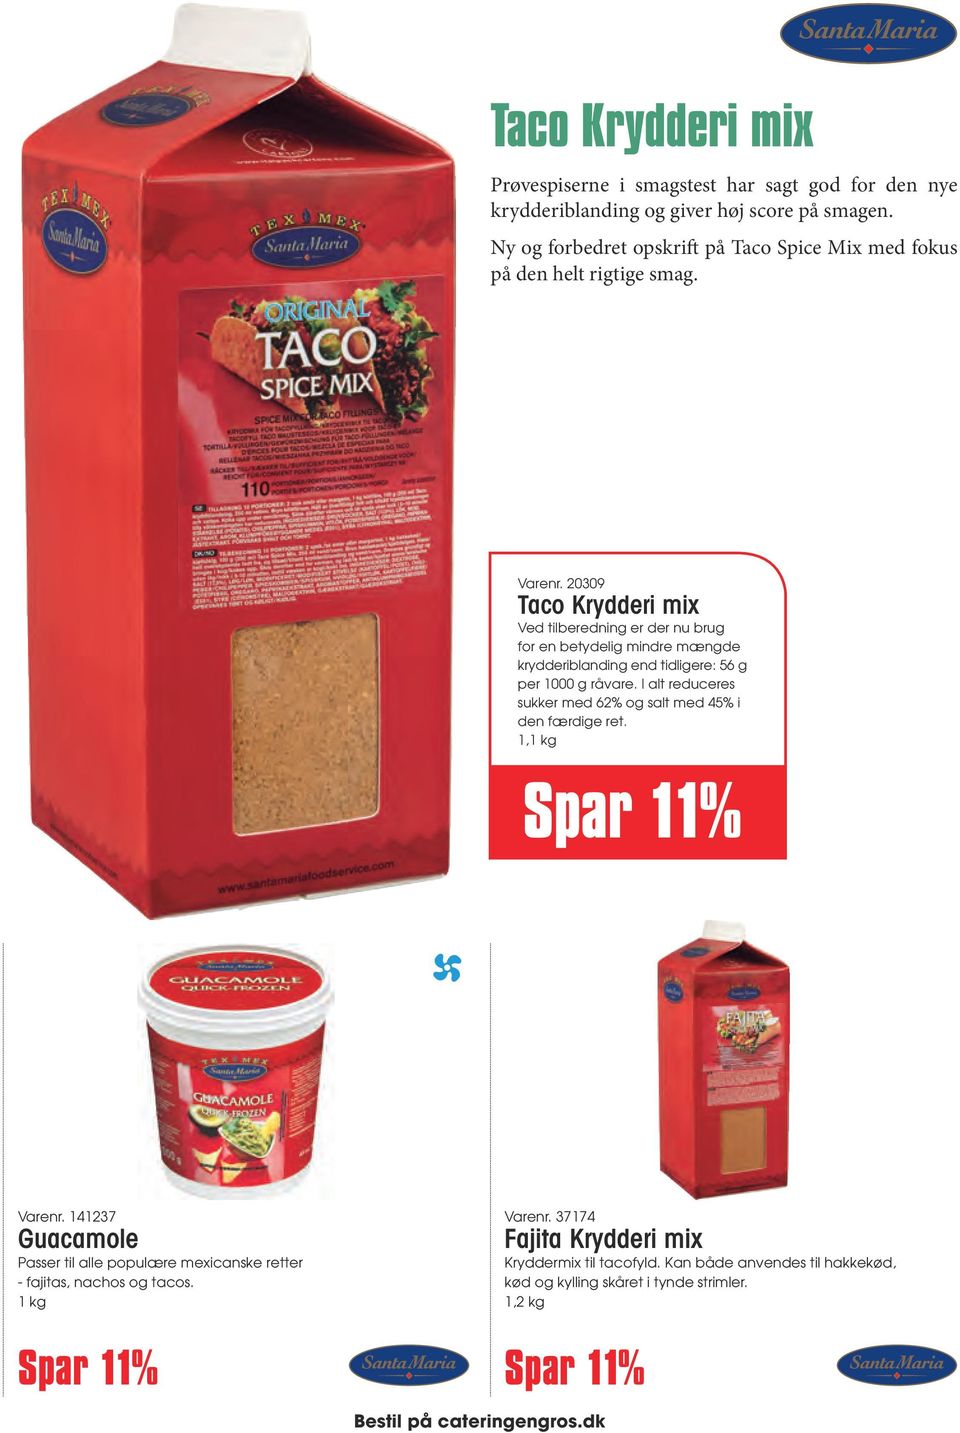 20309 Taco Krydderi mix Ved tilberedning er der nu brug for en betydelig mindre mængde krydderiblanding end tidligere: 56 g per 1000 g råvare.